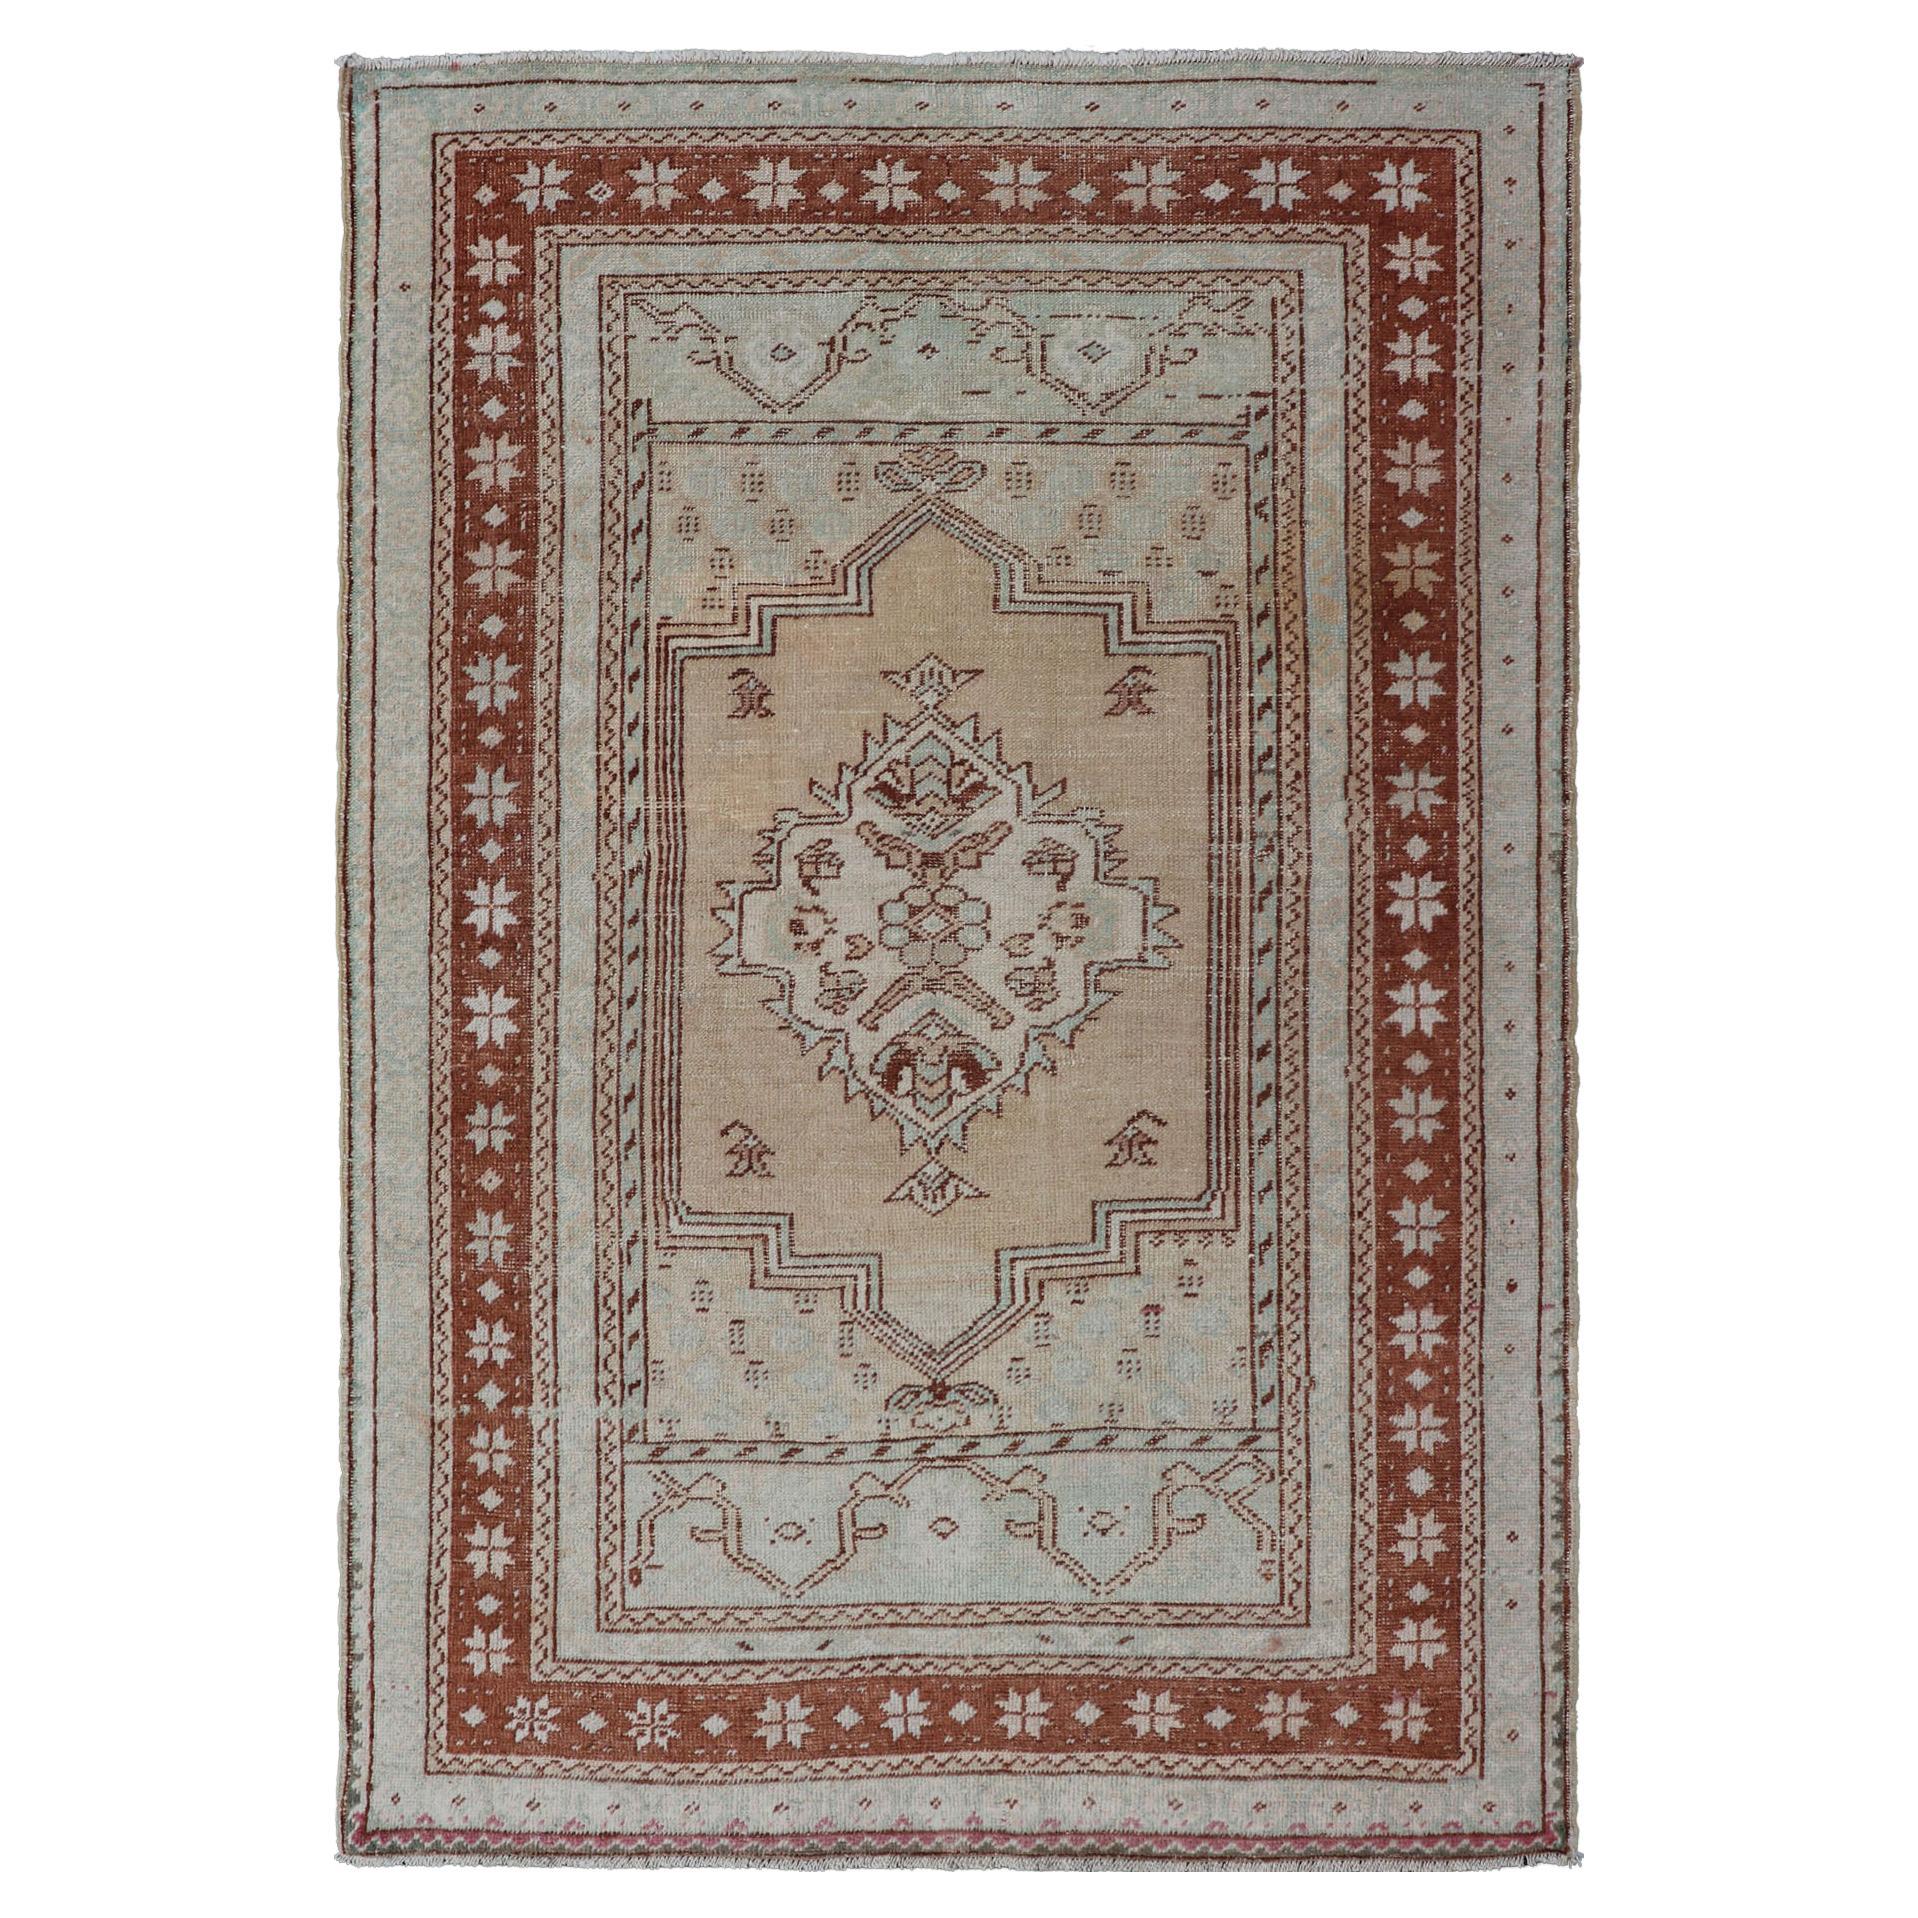 Türkischer Oushak-Teppich im Vintage-Stil mit Medaillonmuster in Kamel, Taupe und Hellblau